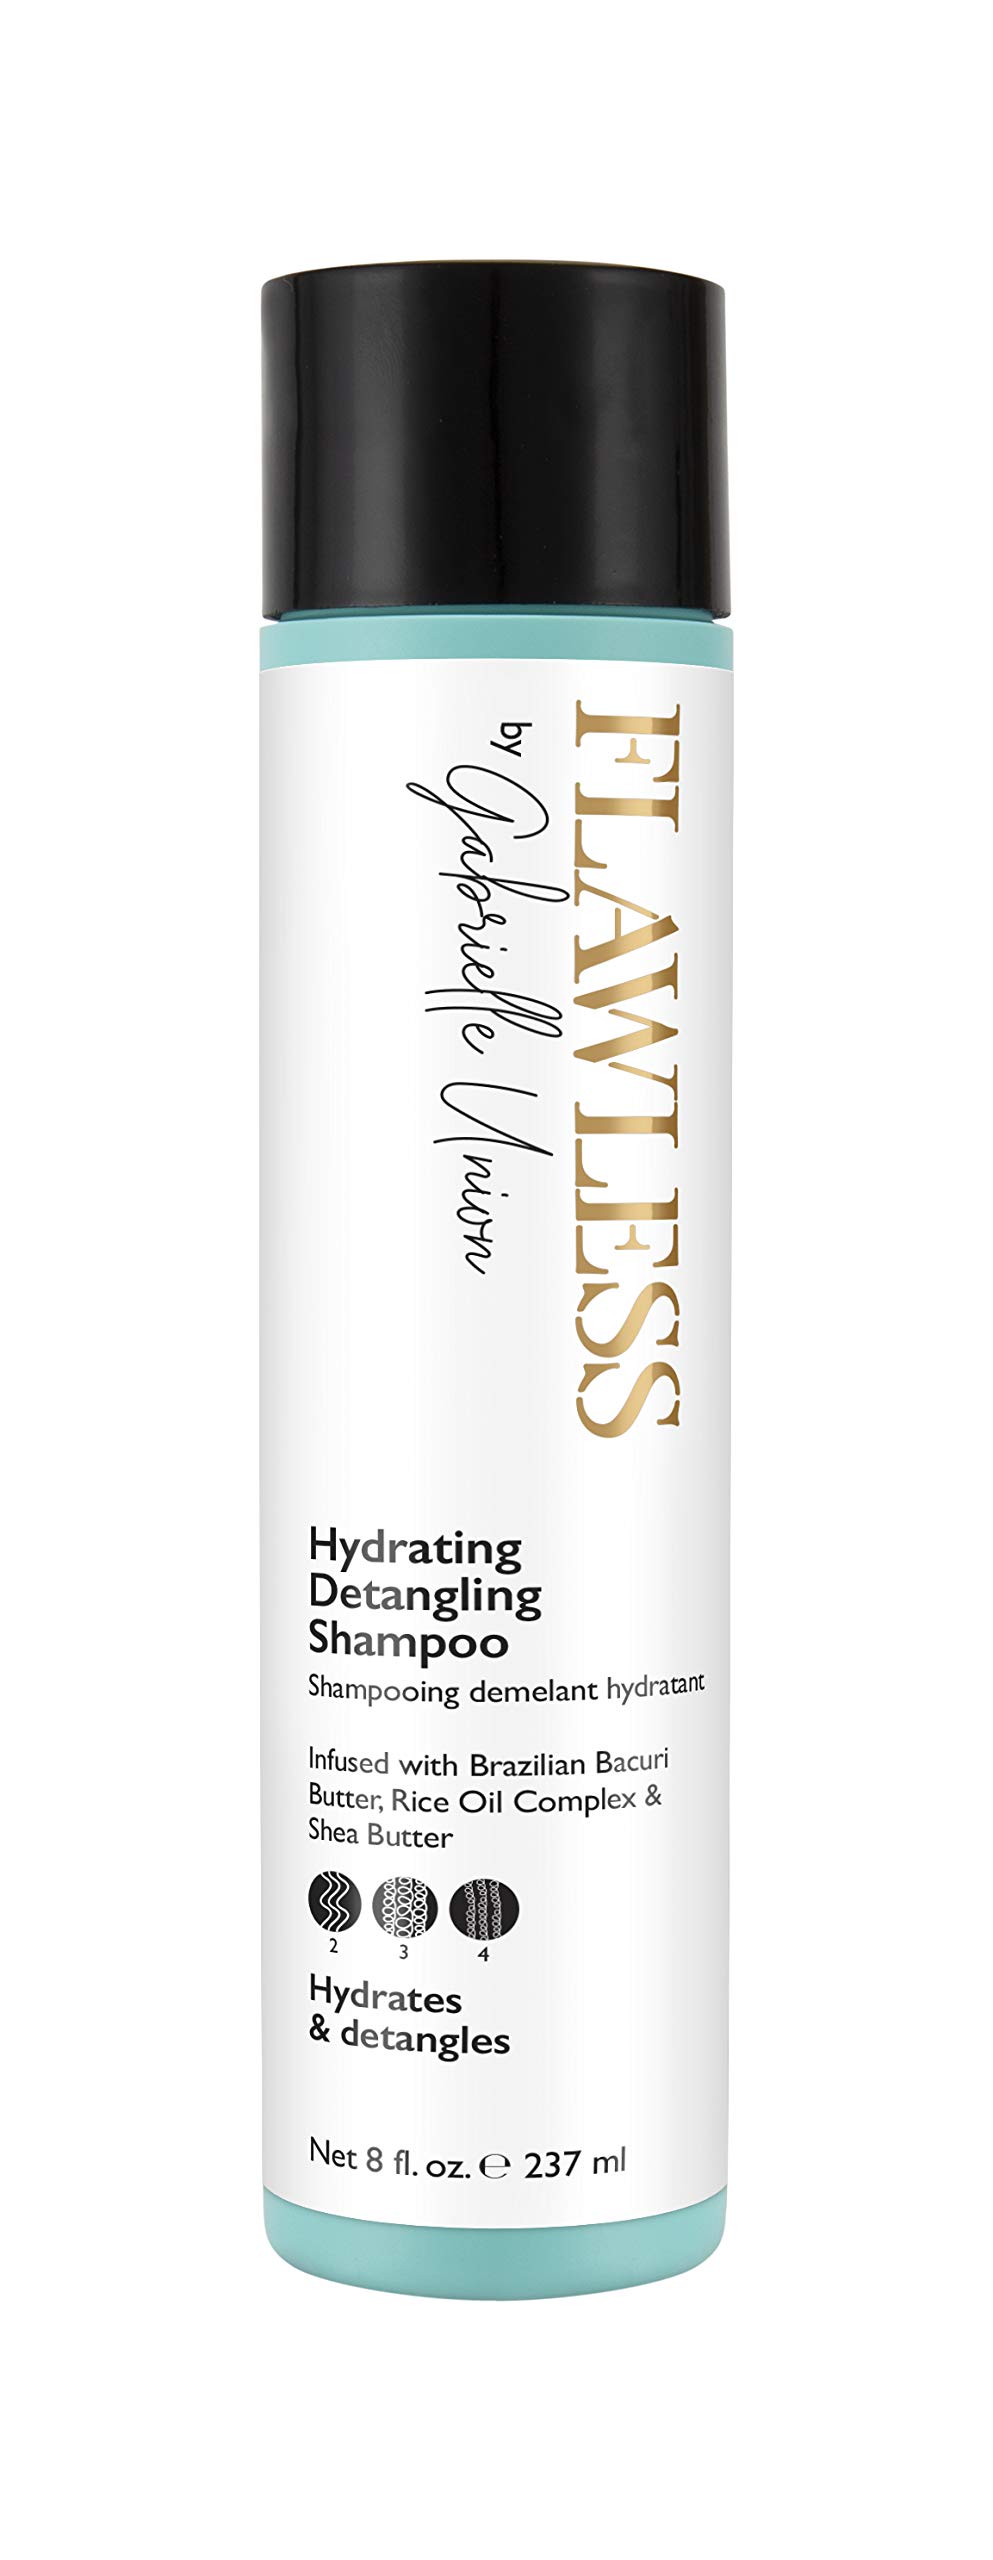 Flawless by Gabrielle Union - Hydrating Detangling Hair Shampoo, 8 OZ